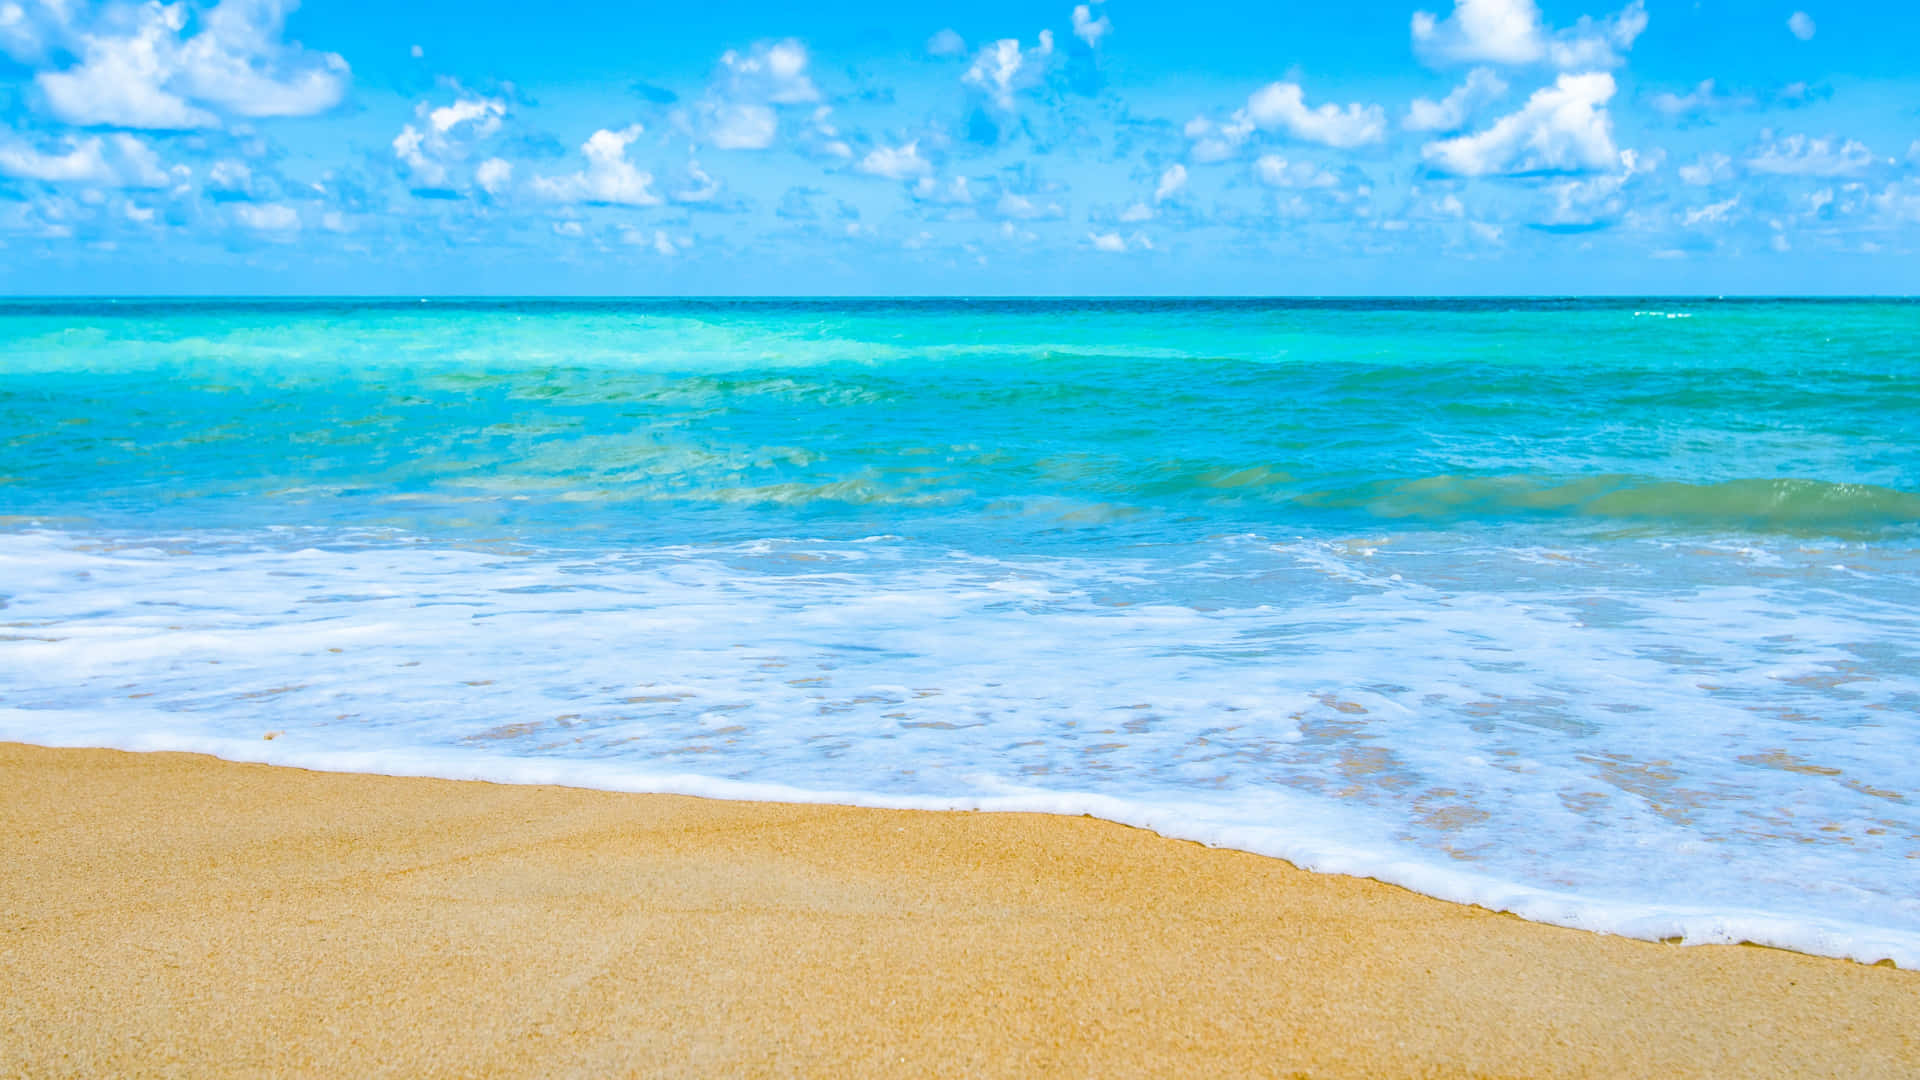 A Sandy Beach With A Blue Ocean